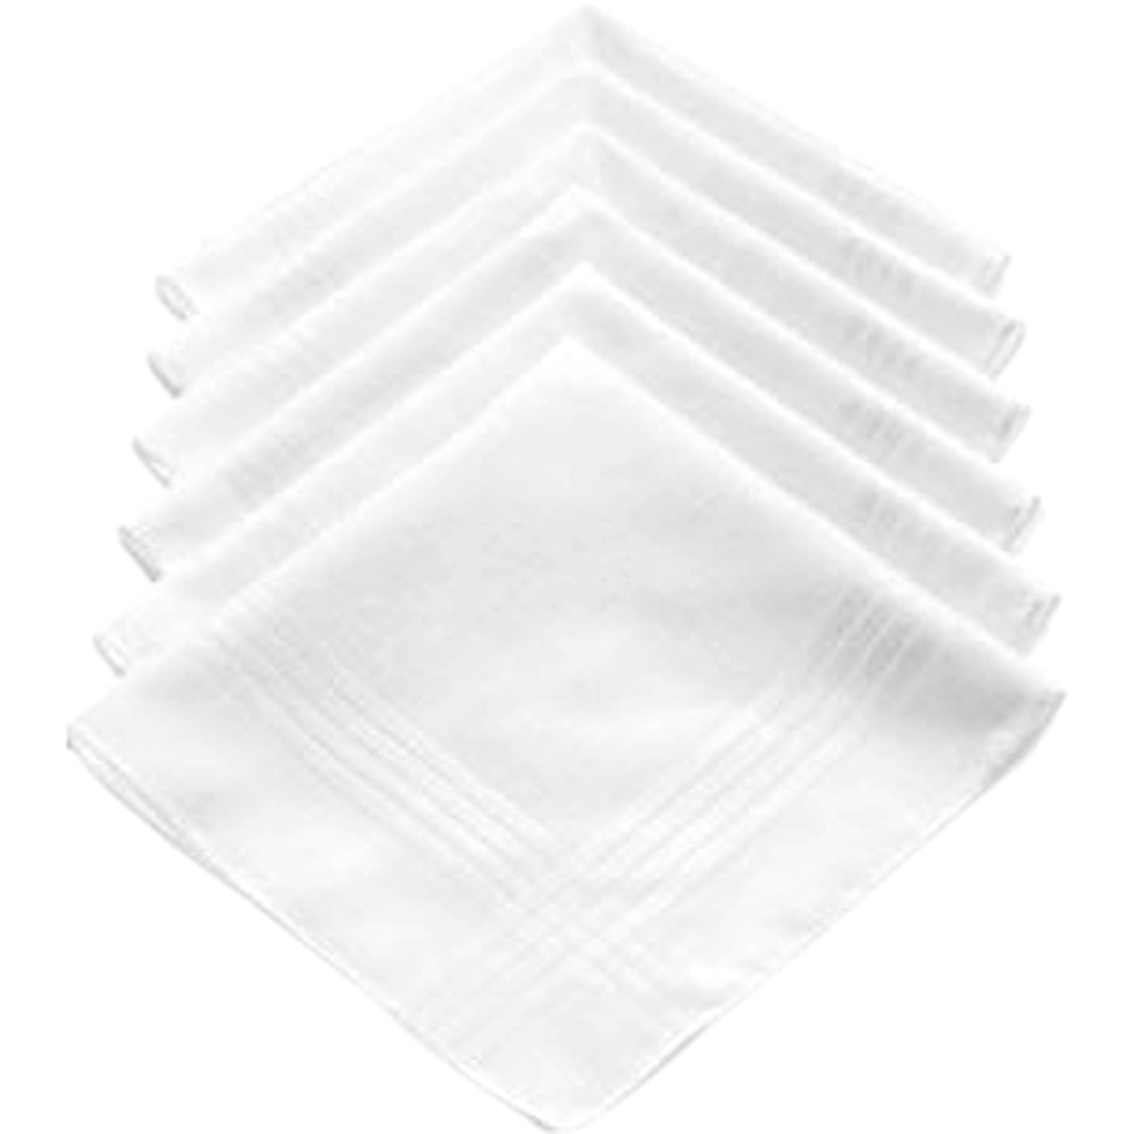 Van Heusen 6 Pk. Cotton Handkerchiefs - Image 2 of 4